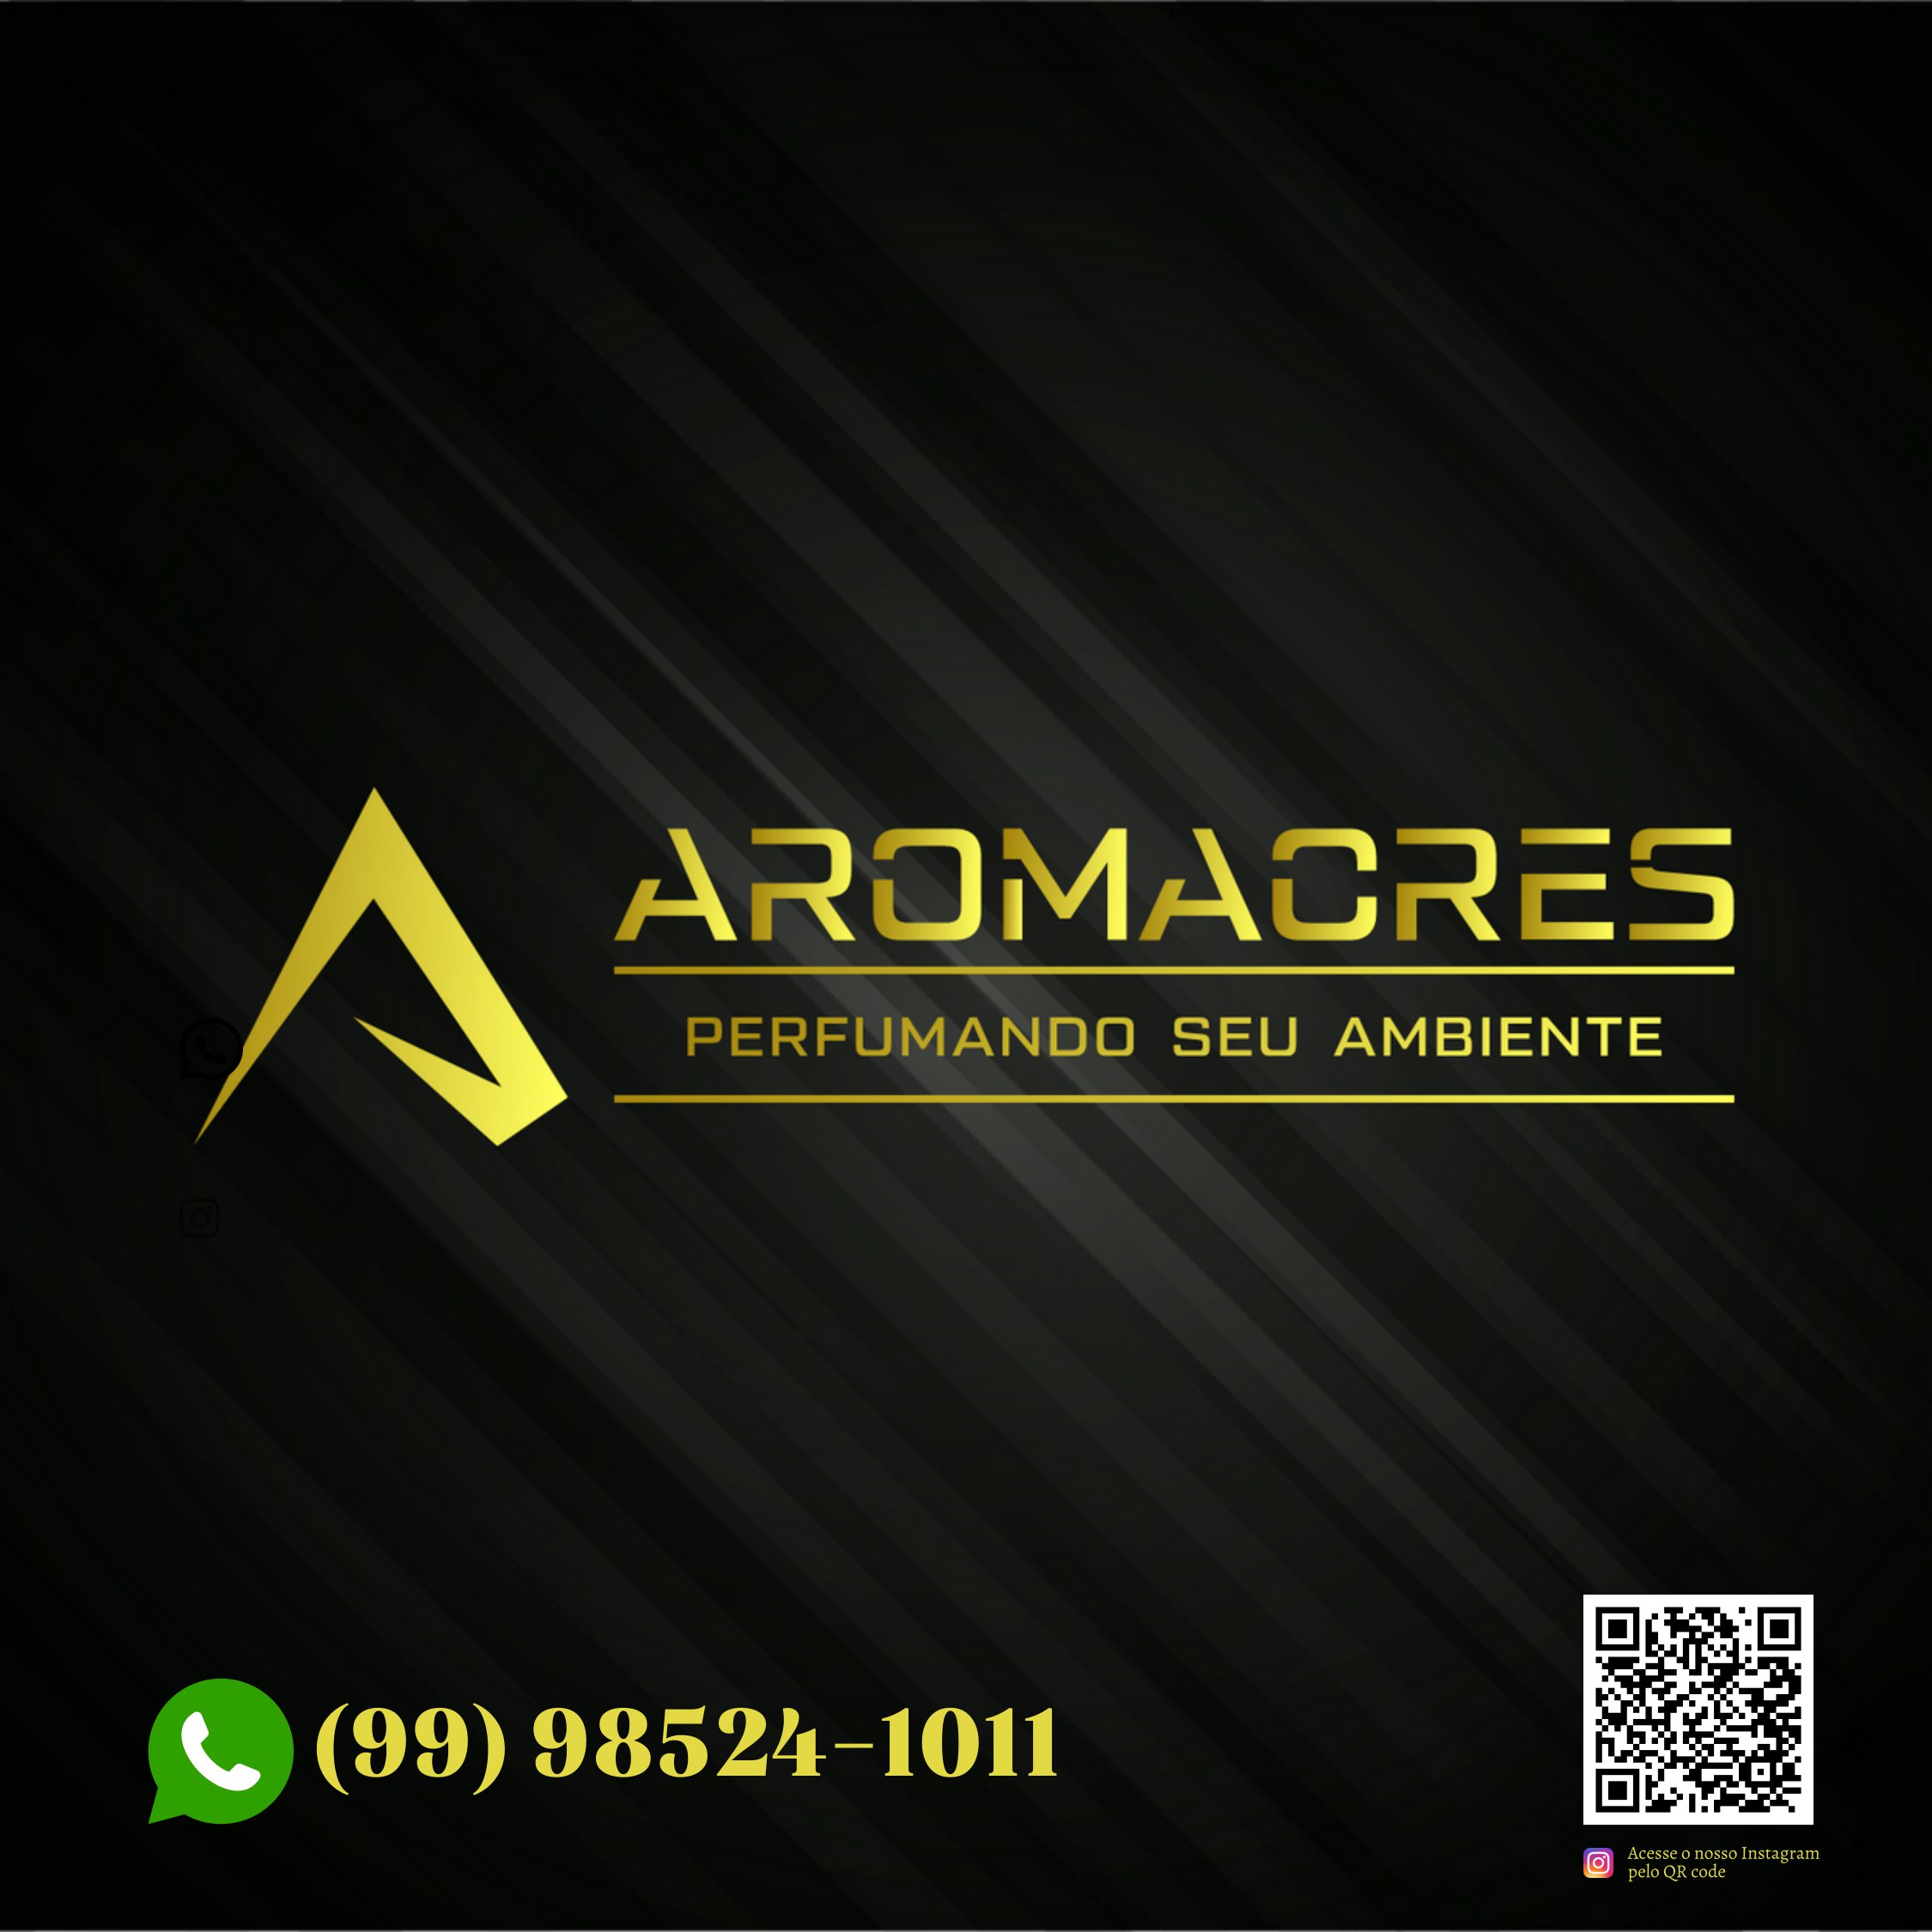 Aromacres